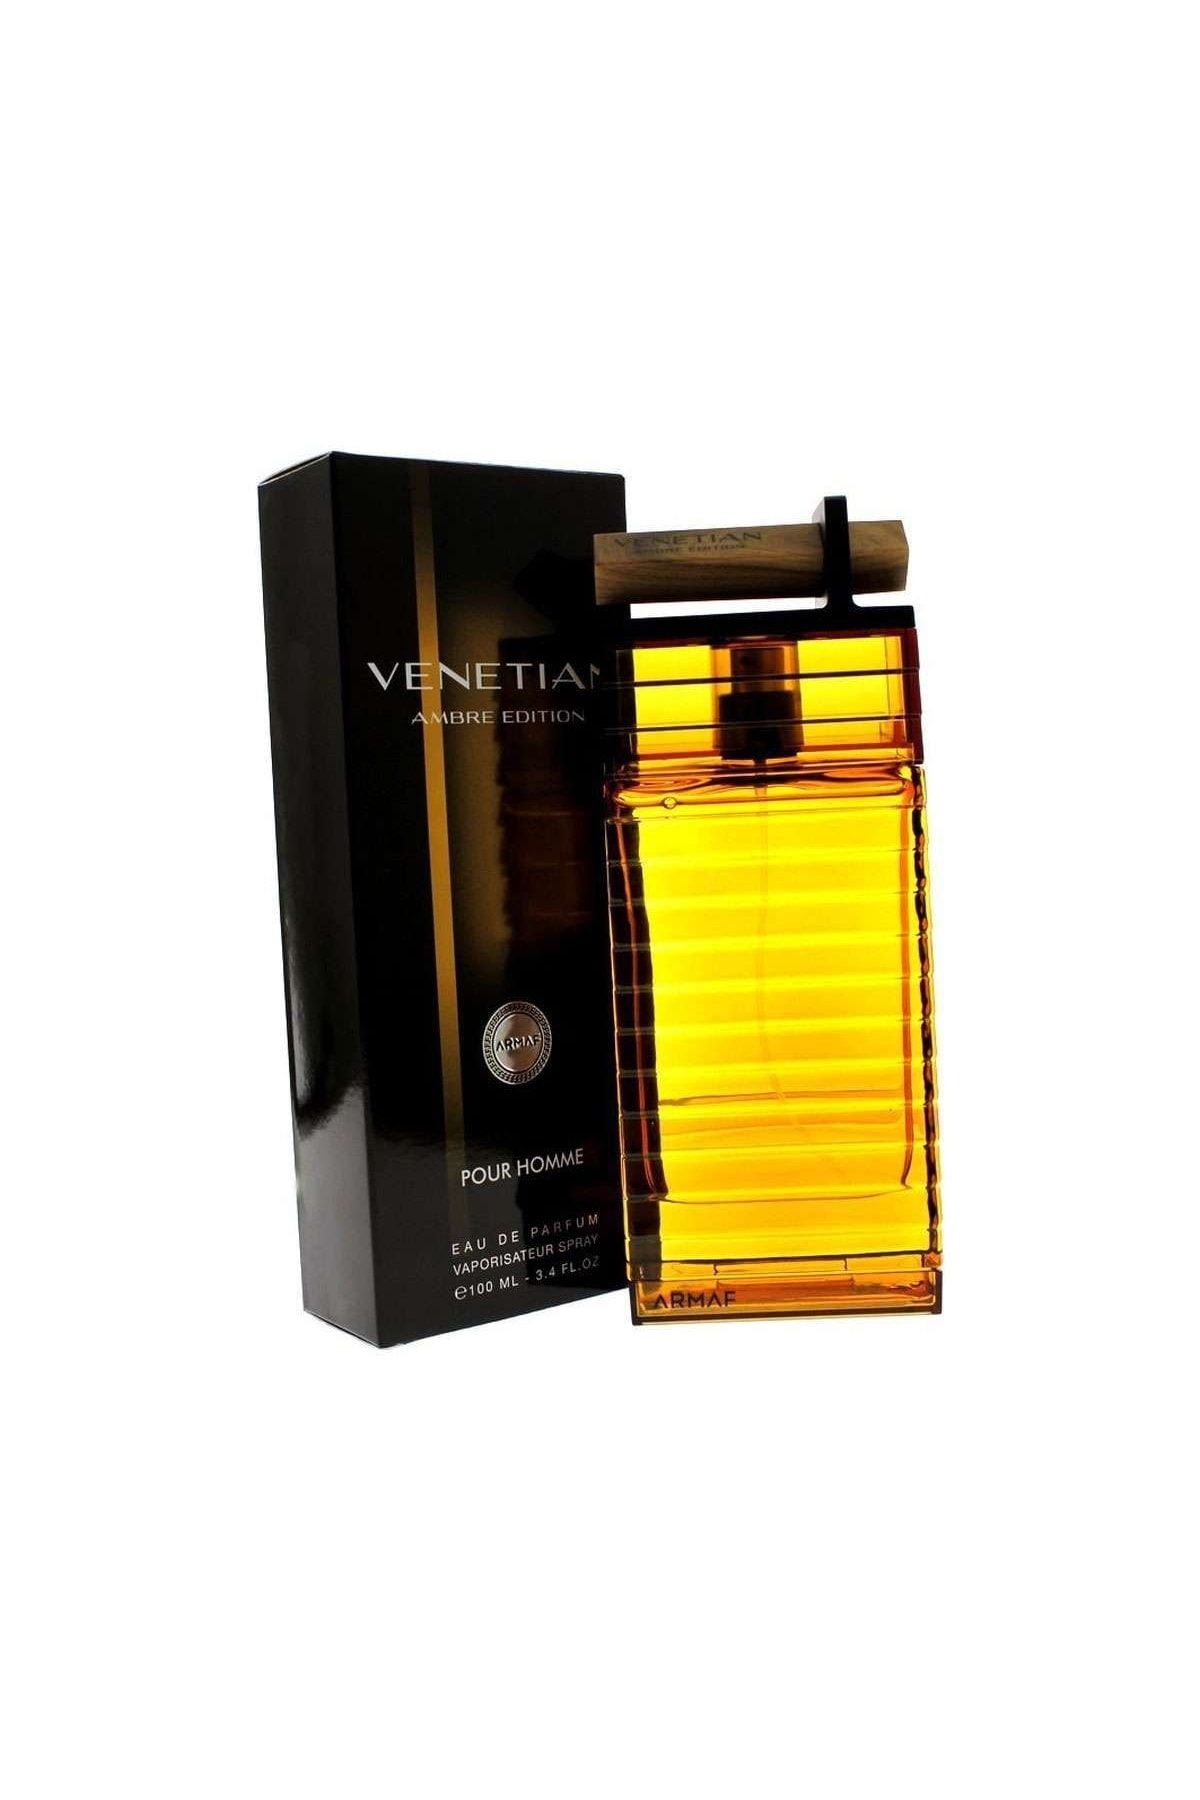 Armaf Venetian Ambre Edition Edp 100 Ml Erkek Parfüm